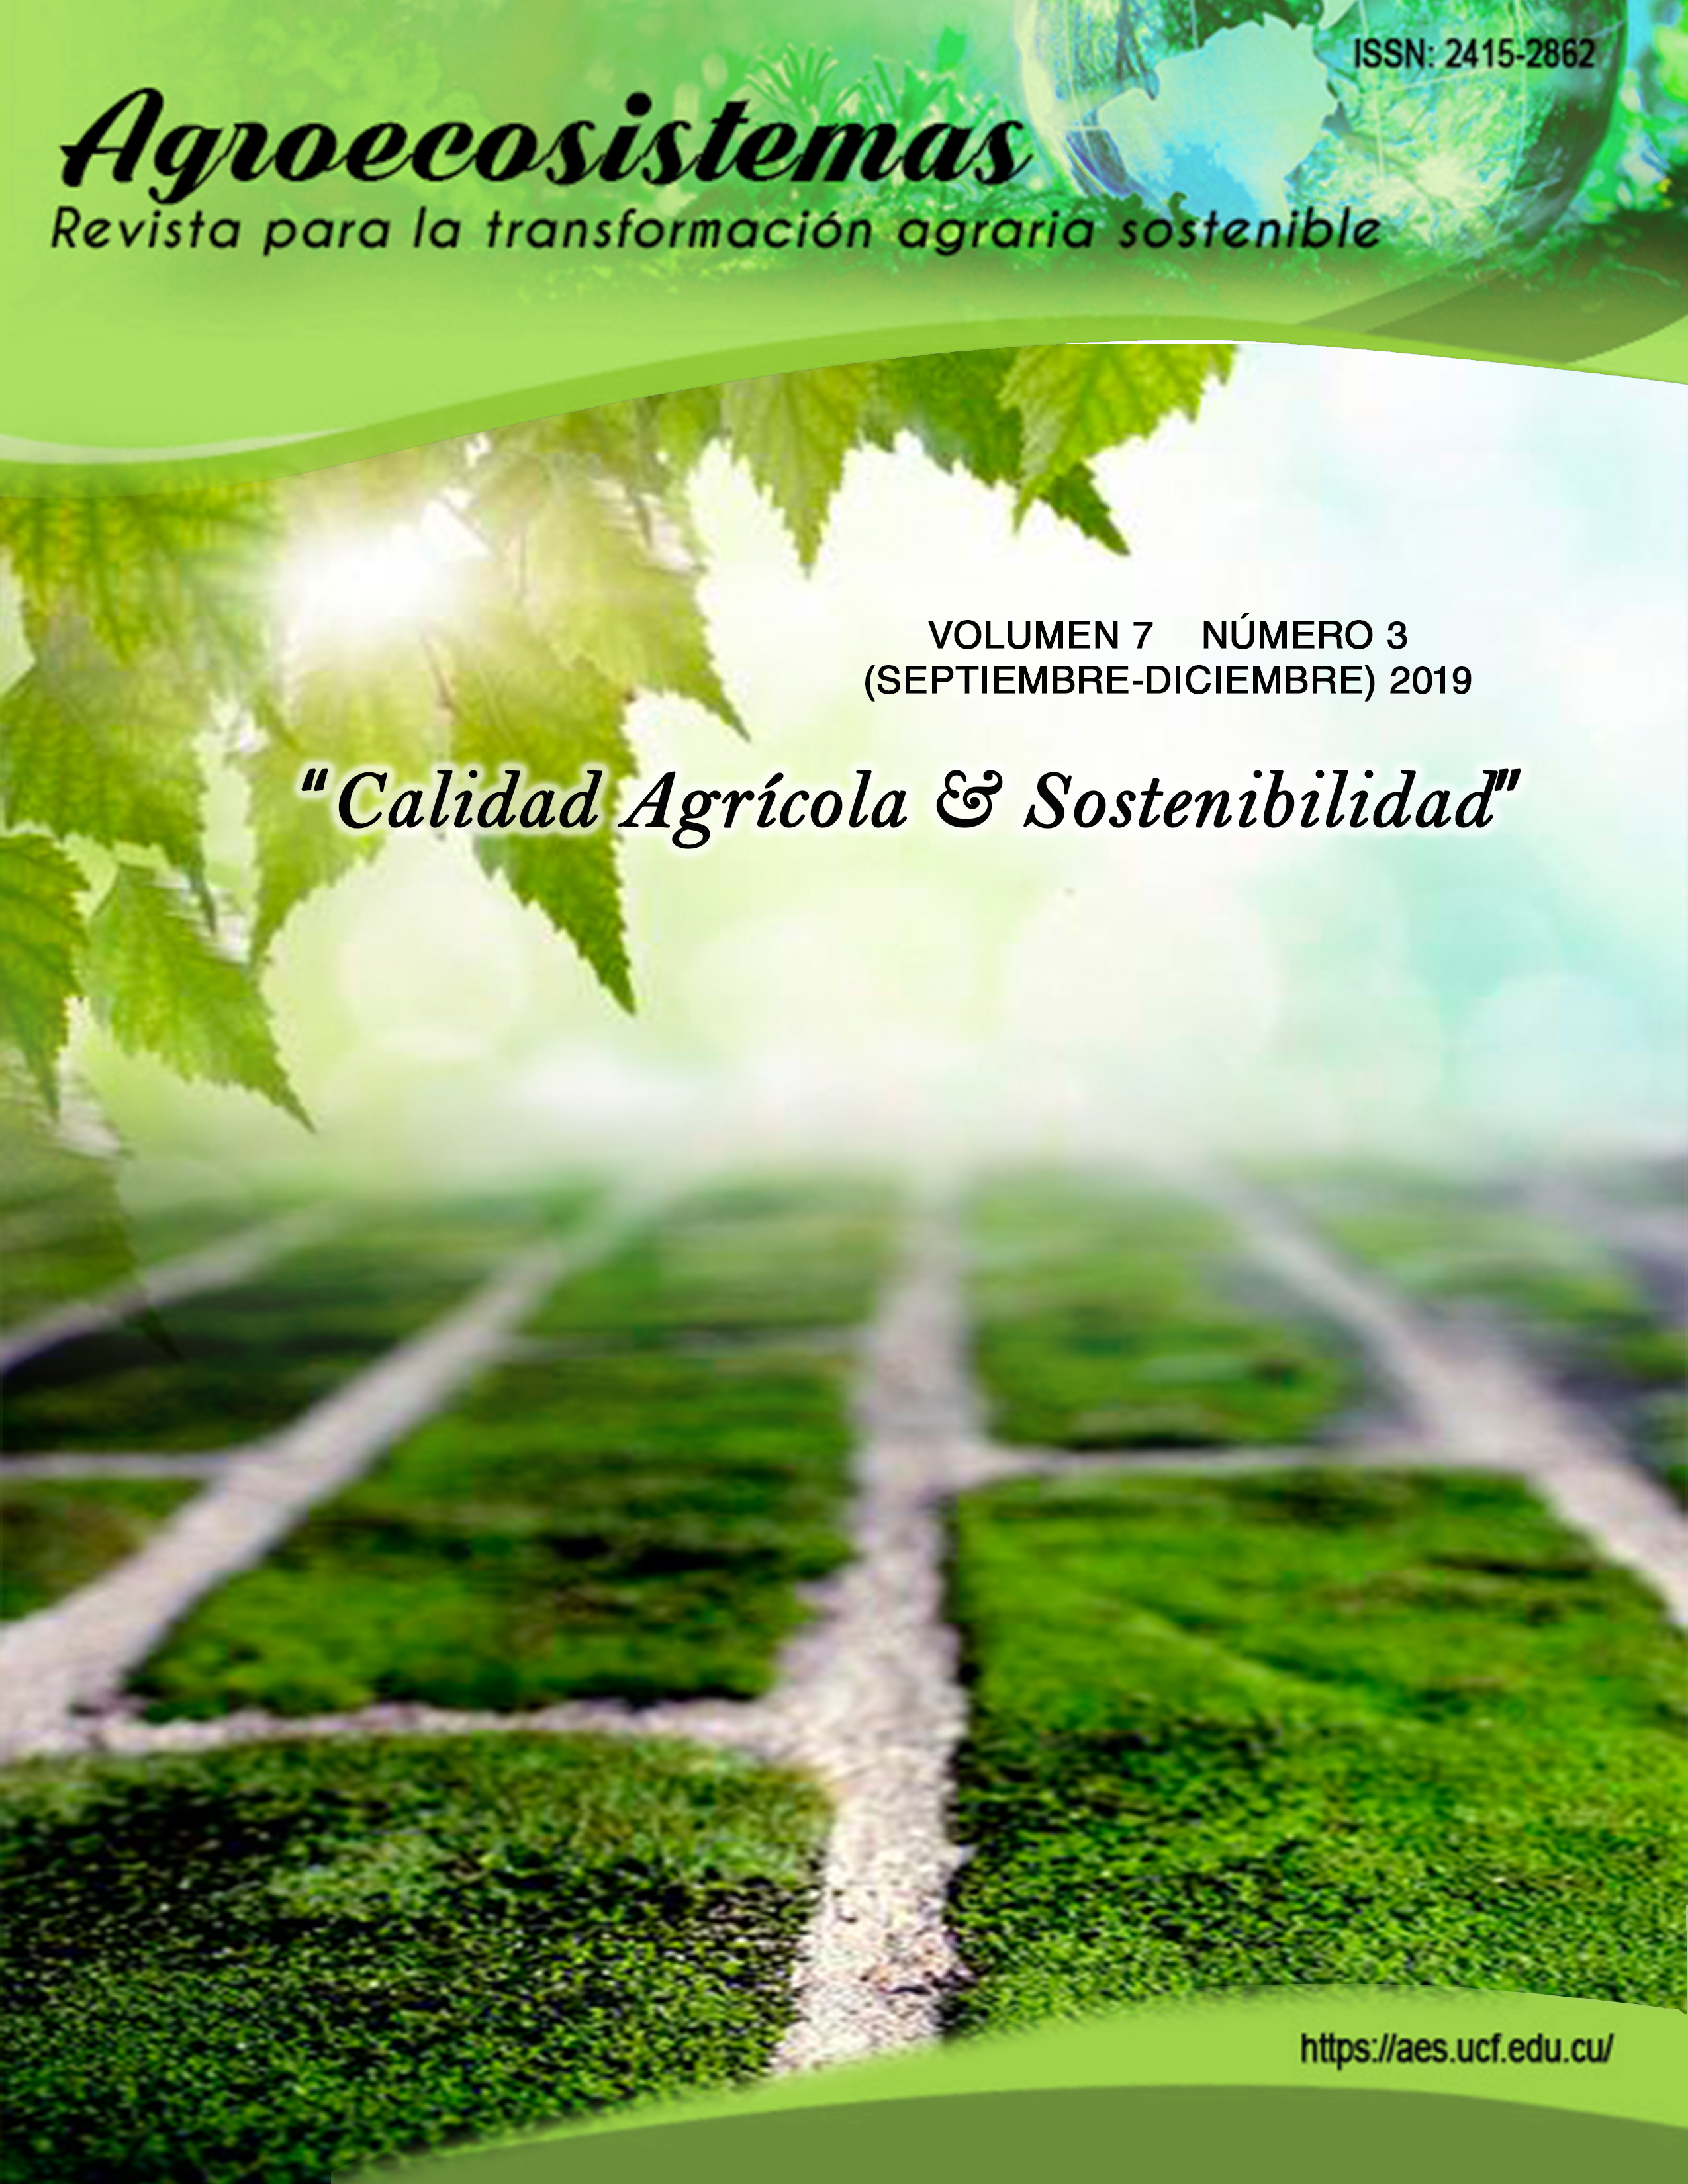 					Ver Vol. 7 Núm. 3 (2019): Calidad Agrícola & Sostenibilidad
				